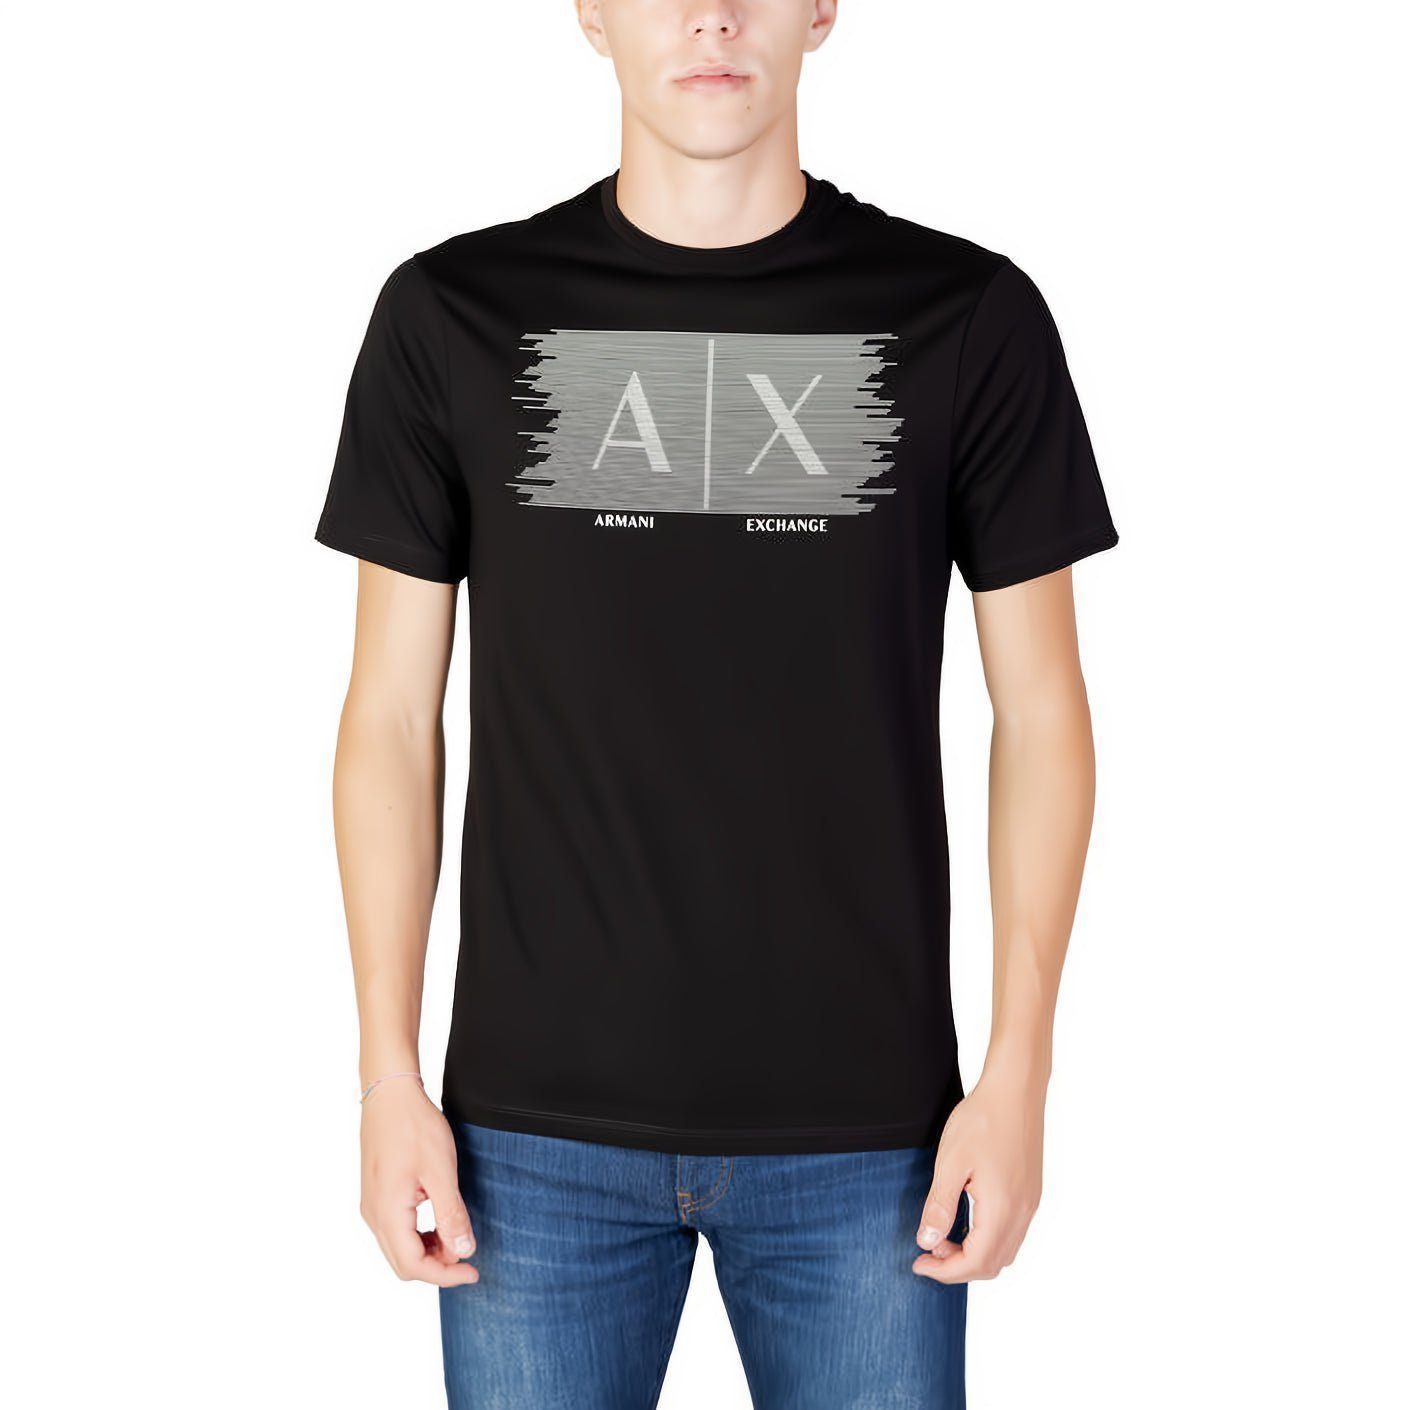 ARMANI EXCHANGE T-Shirt kurzarm, ein Ihre Rundhals, für Must-Have Kleidungskollektion